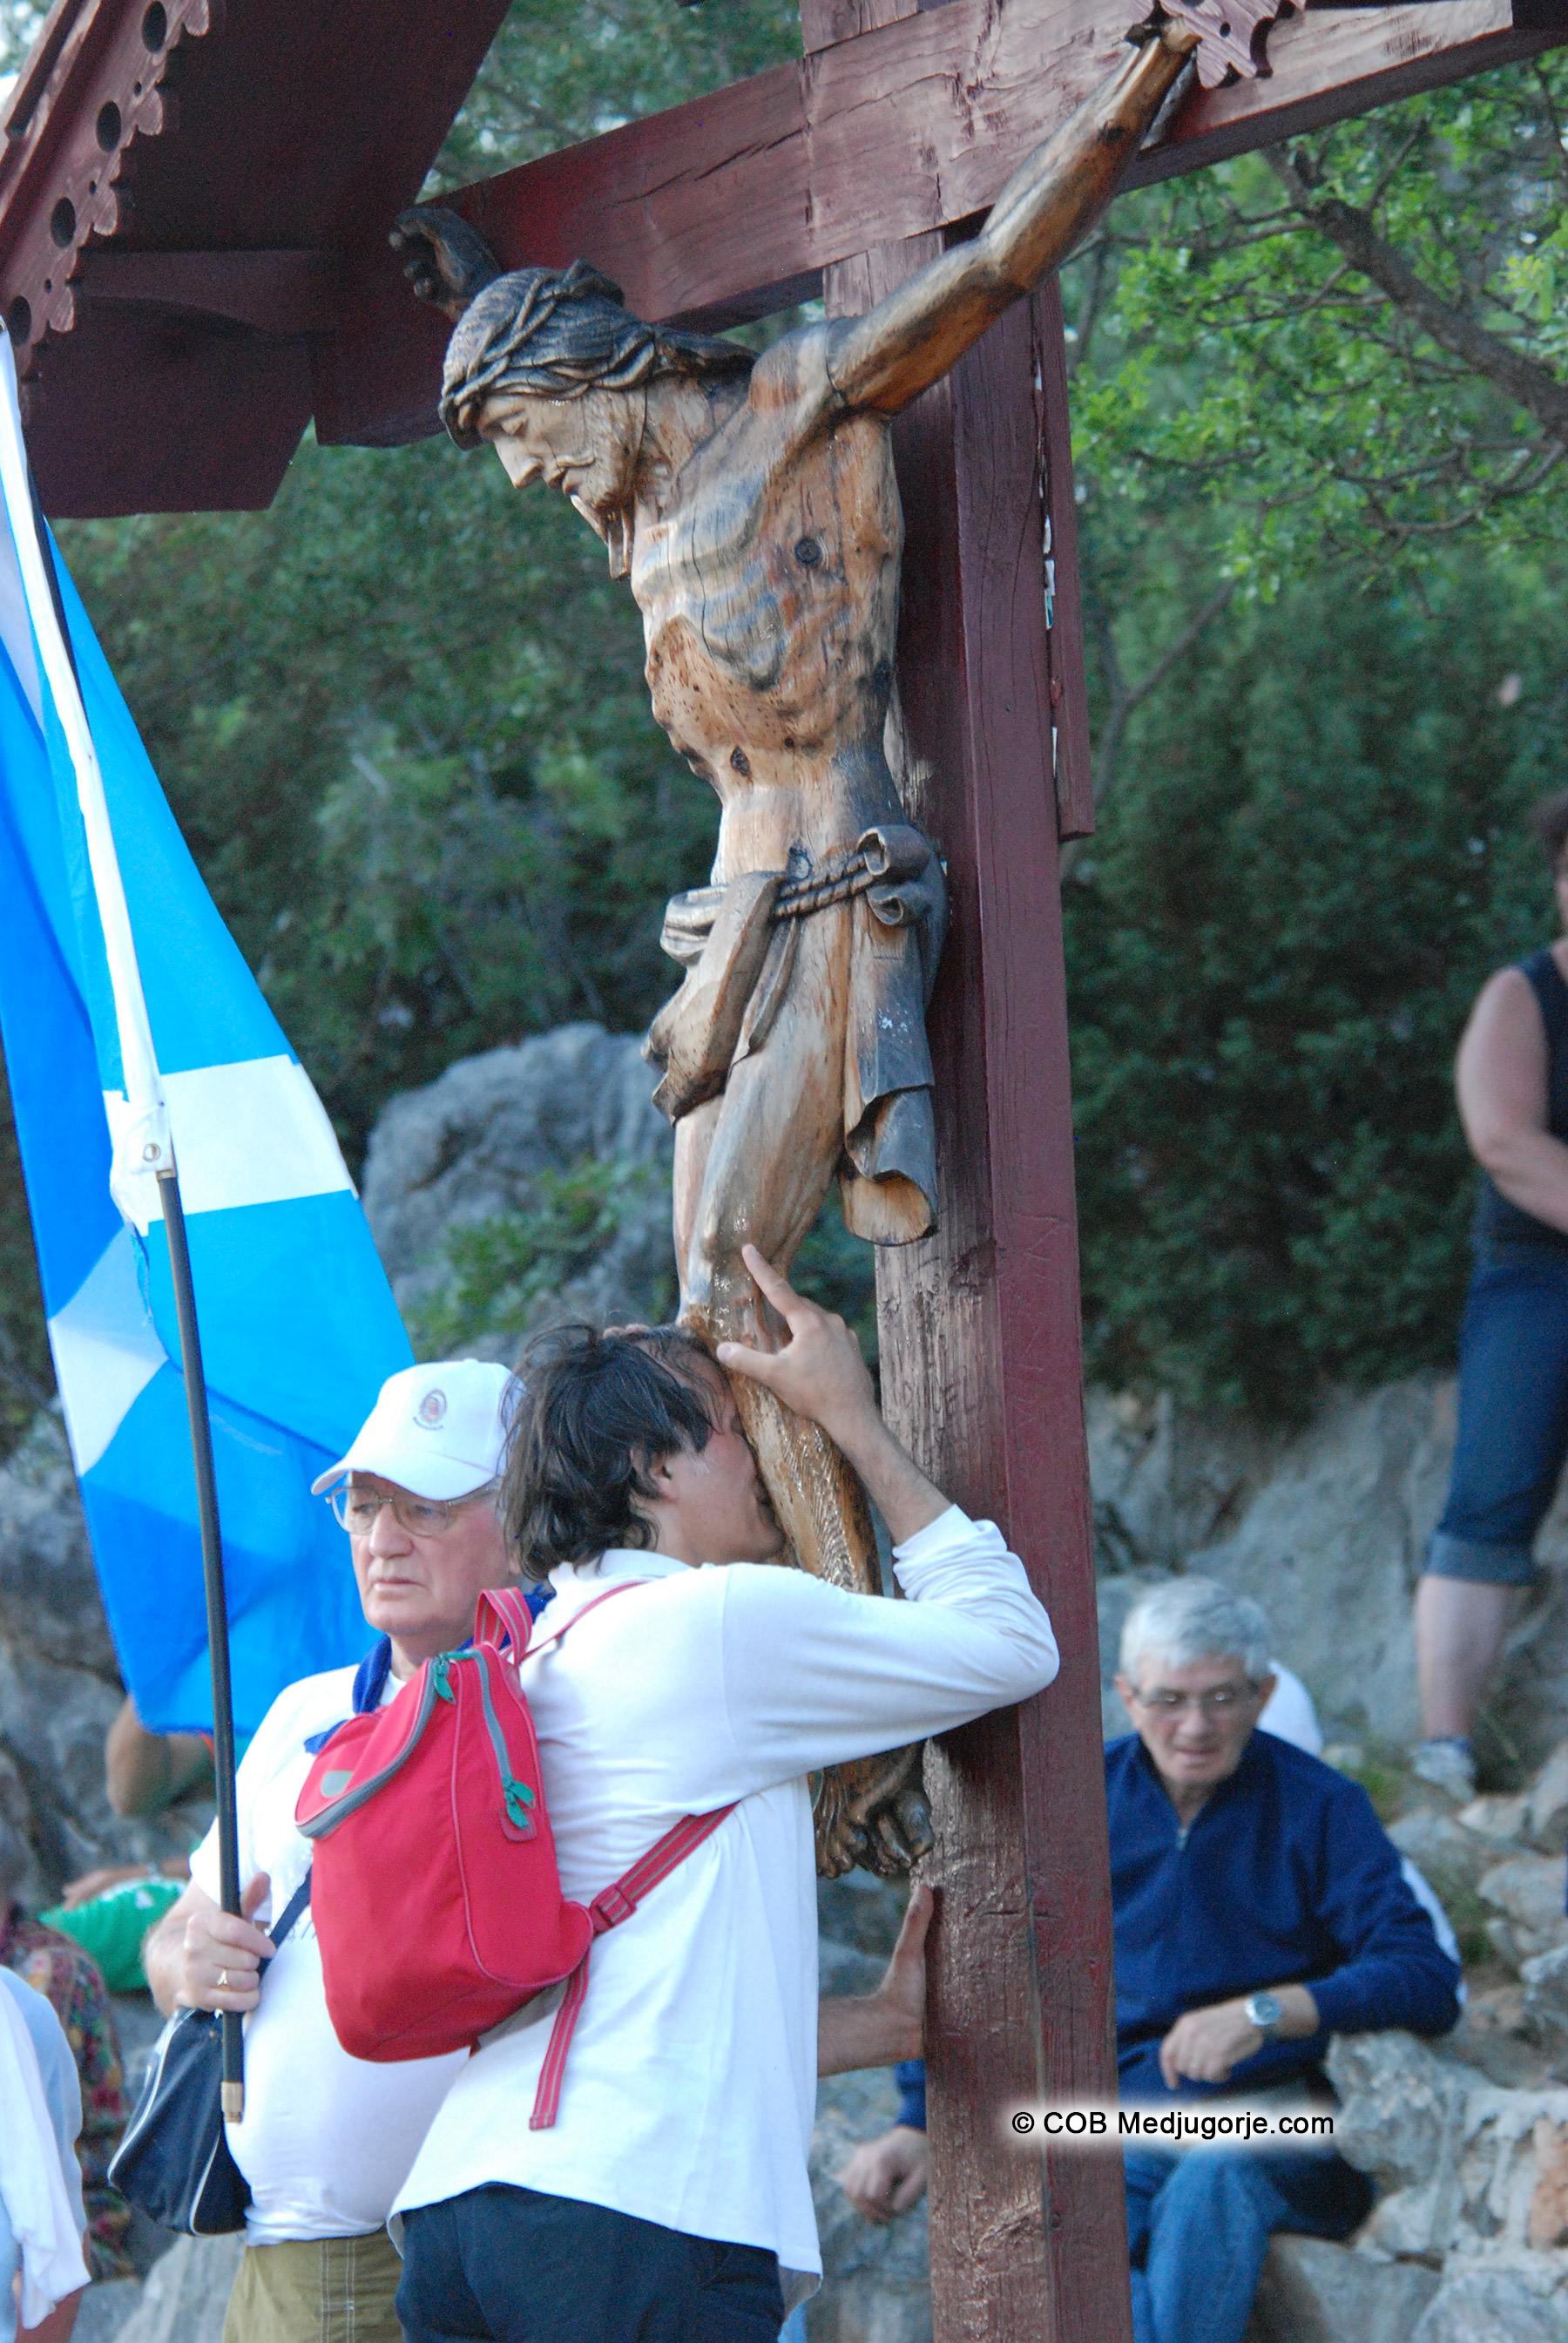 Pilgrim praying on Apparition Mountain June 24, 2013